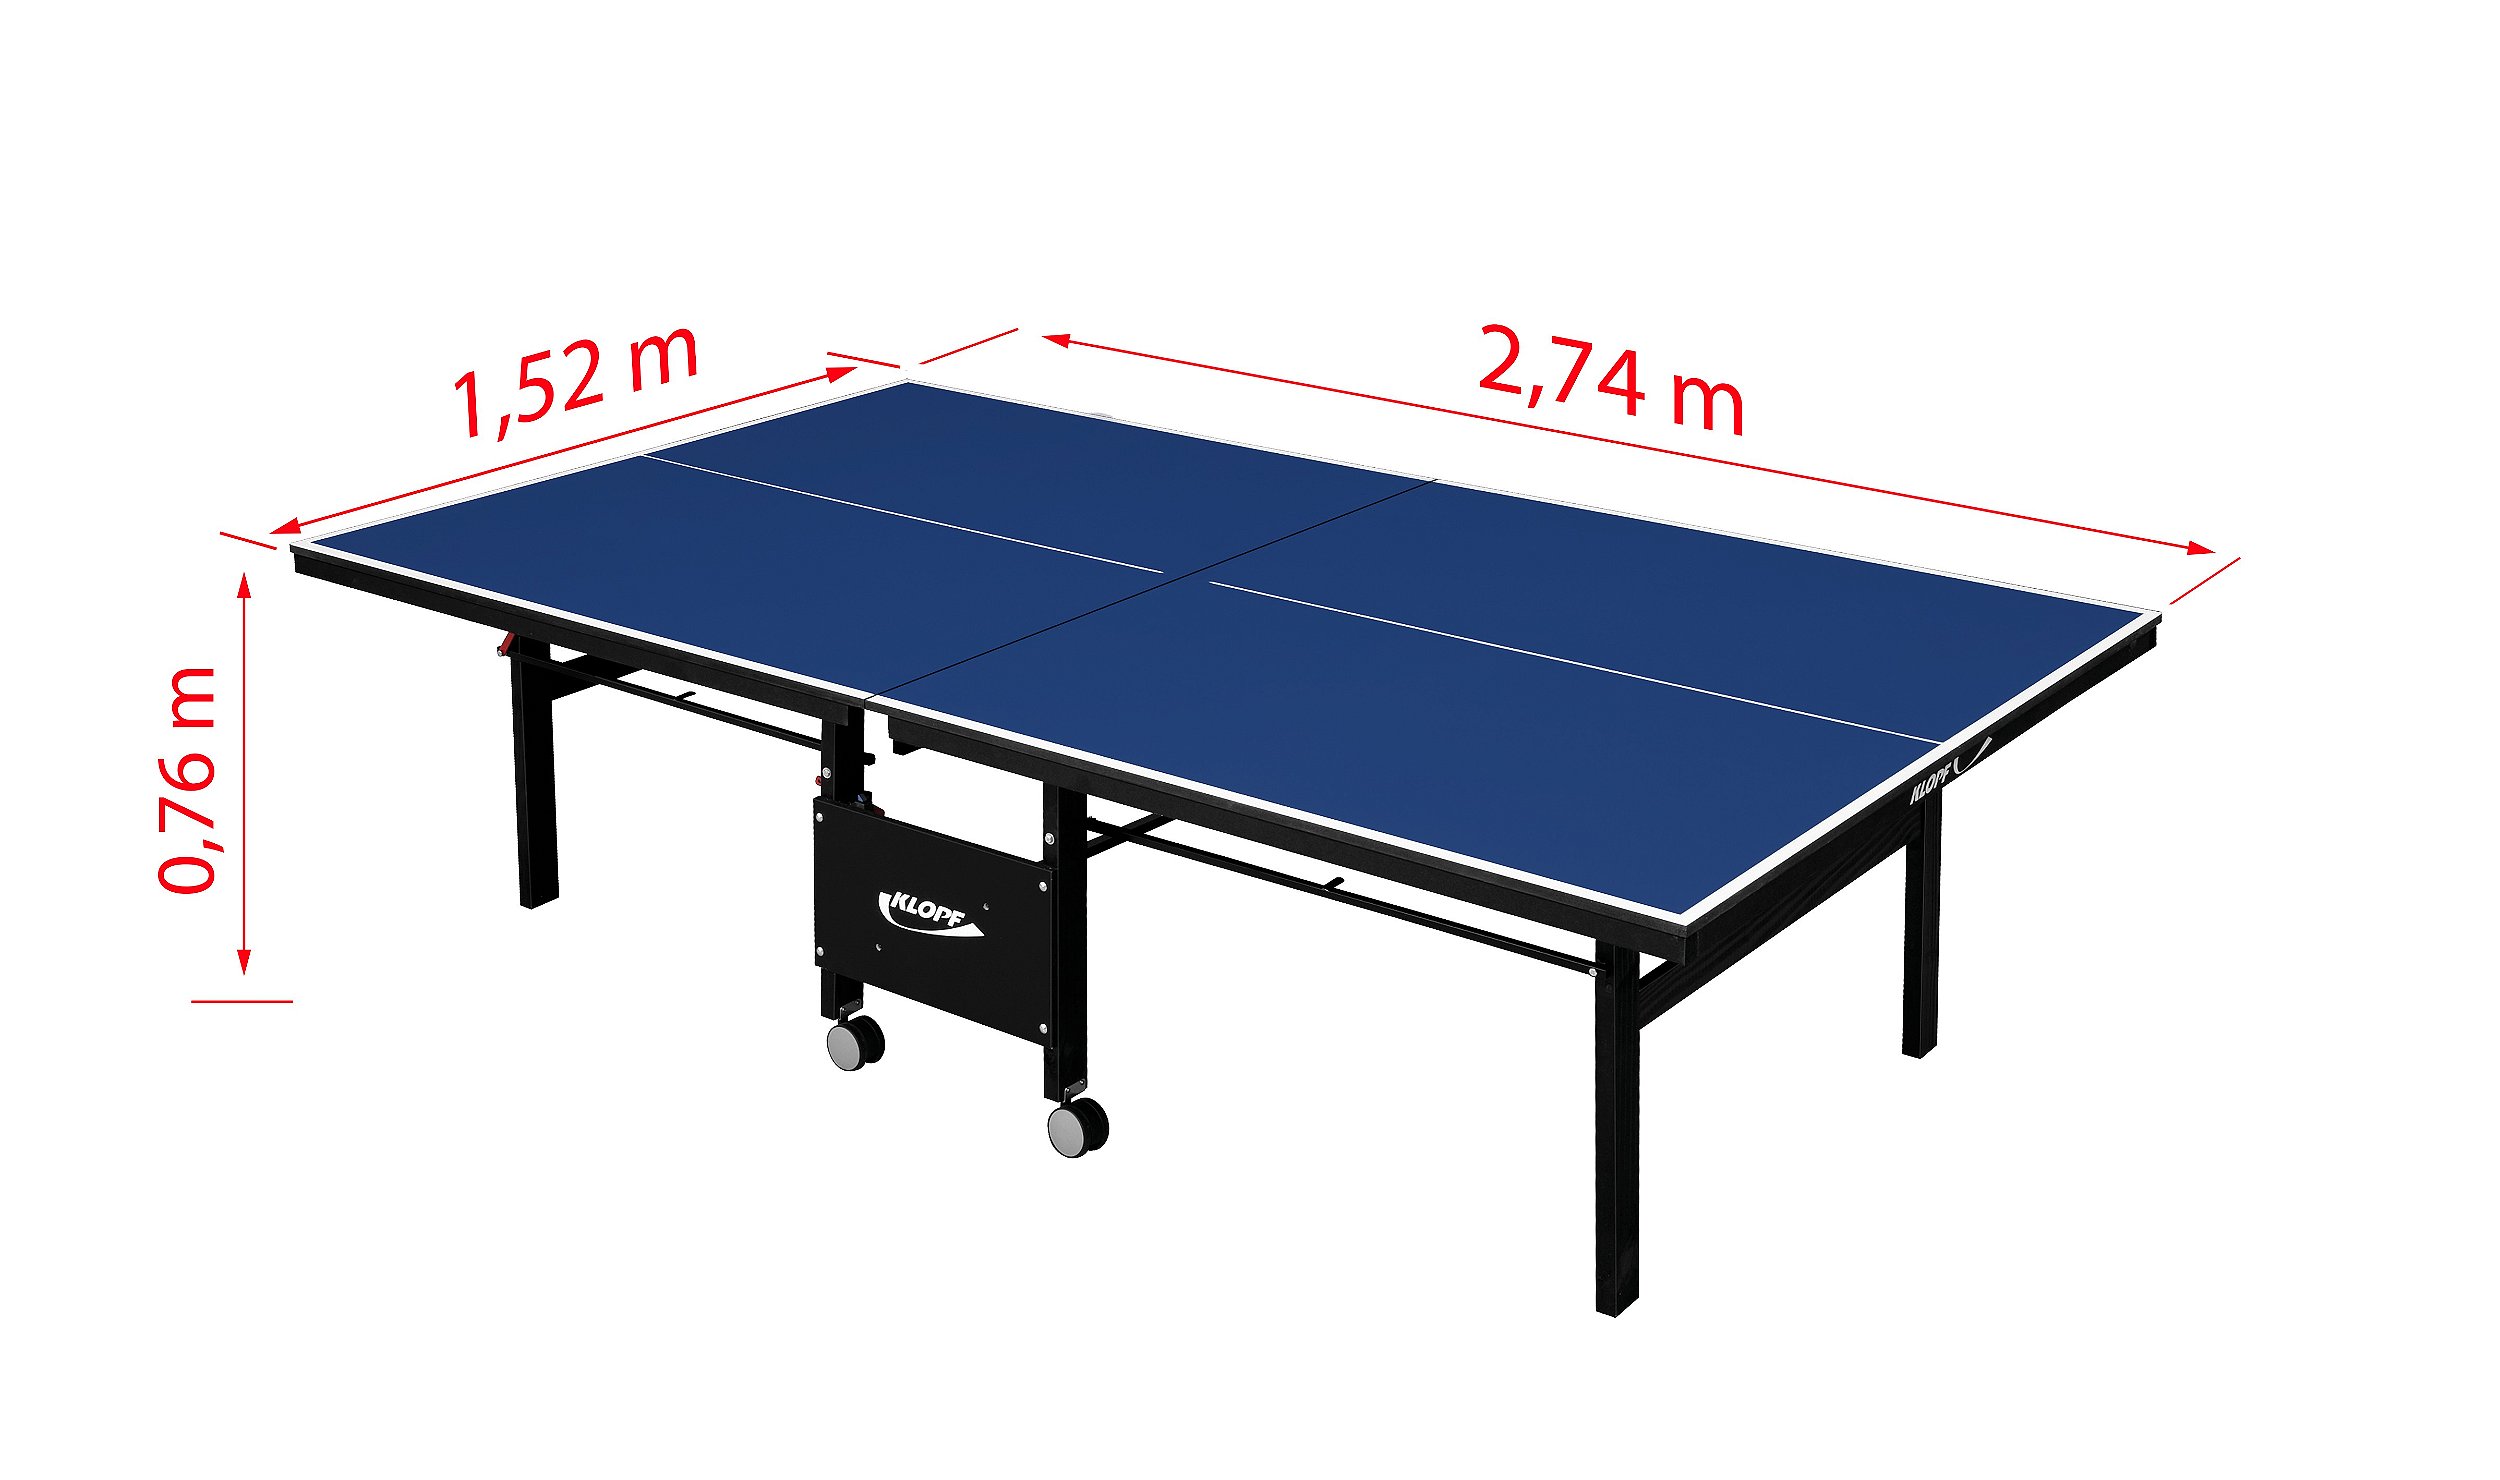 Mesa De Ping Pong Dobrável com Rodízio MDP15mm Klopf 1007